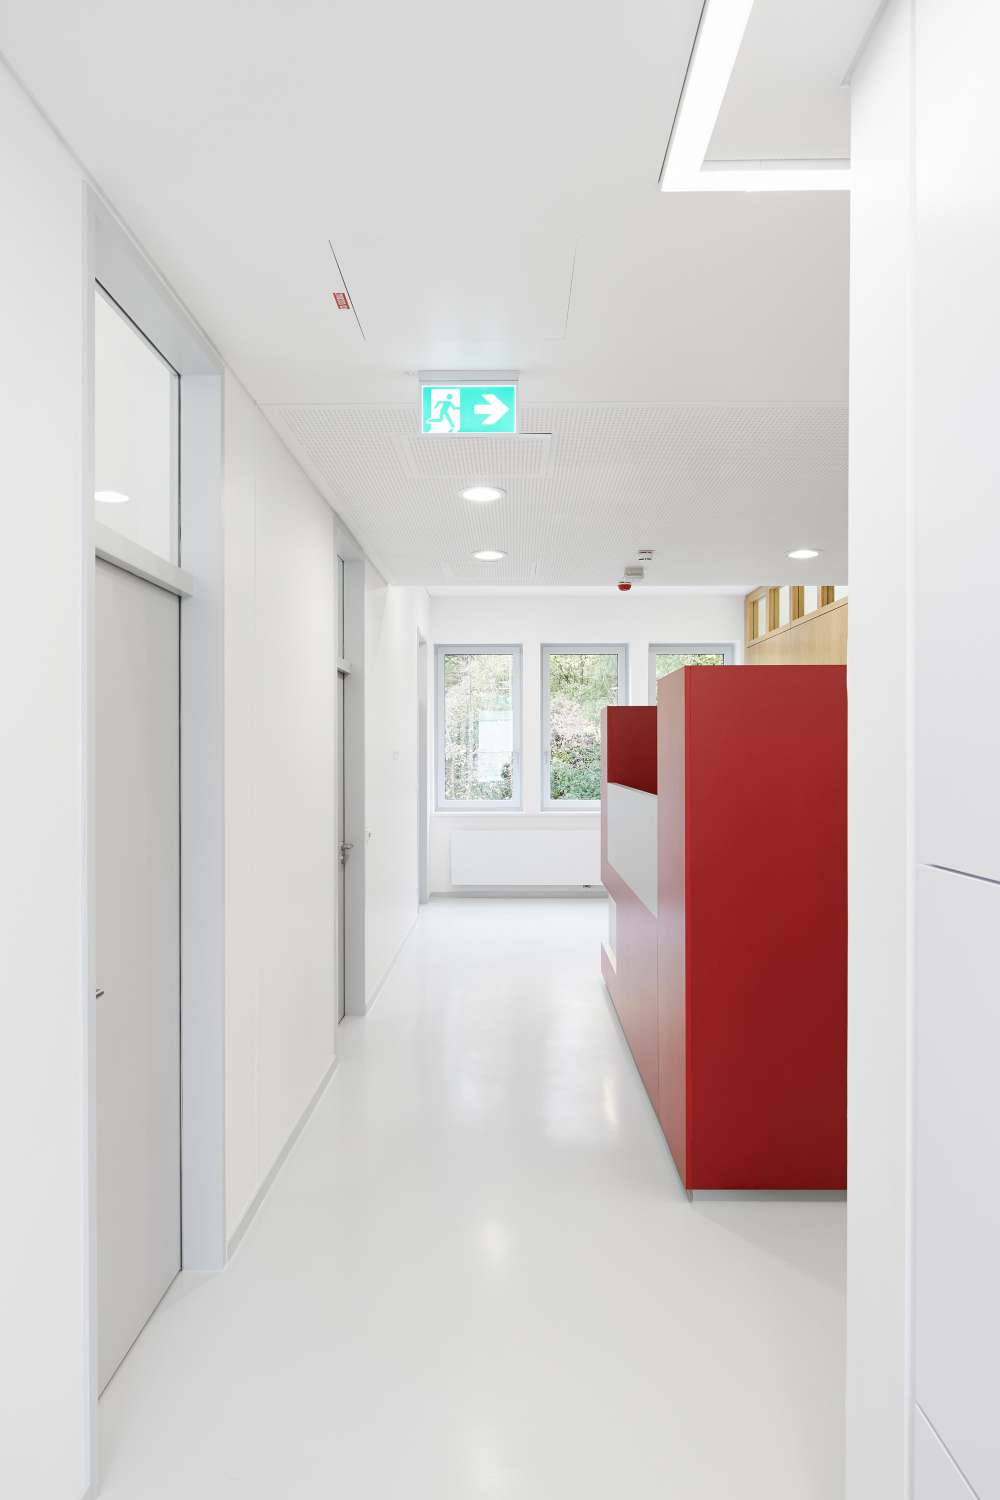 Laborgebäude für präklinische Bildgebung der Werner Siemens-Stiftung (8)